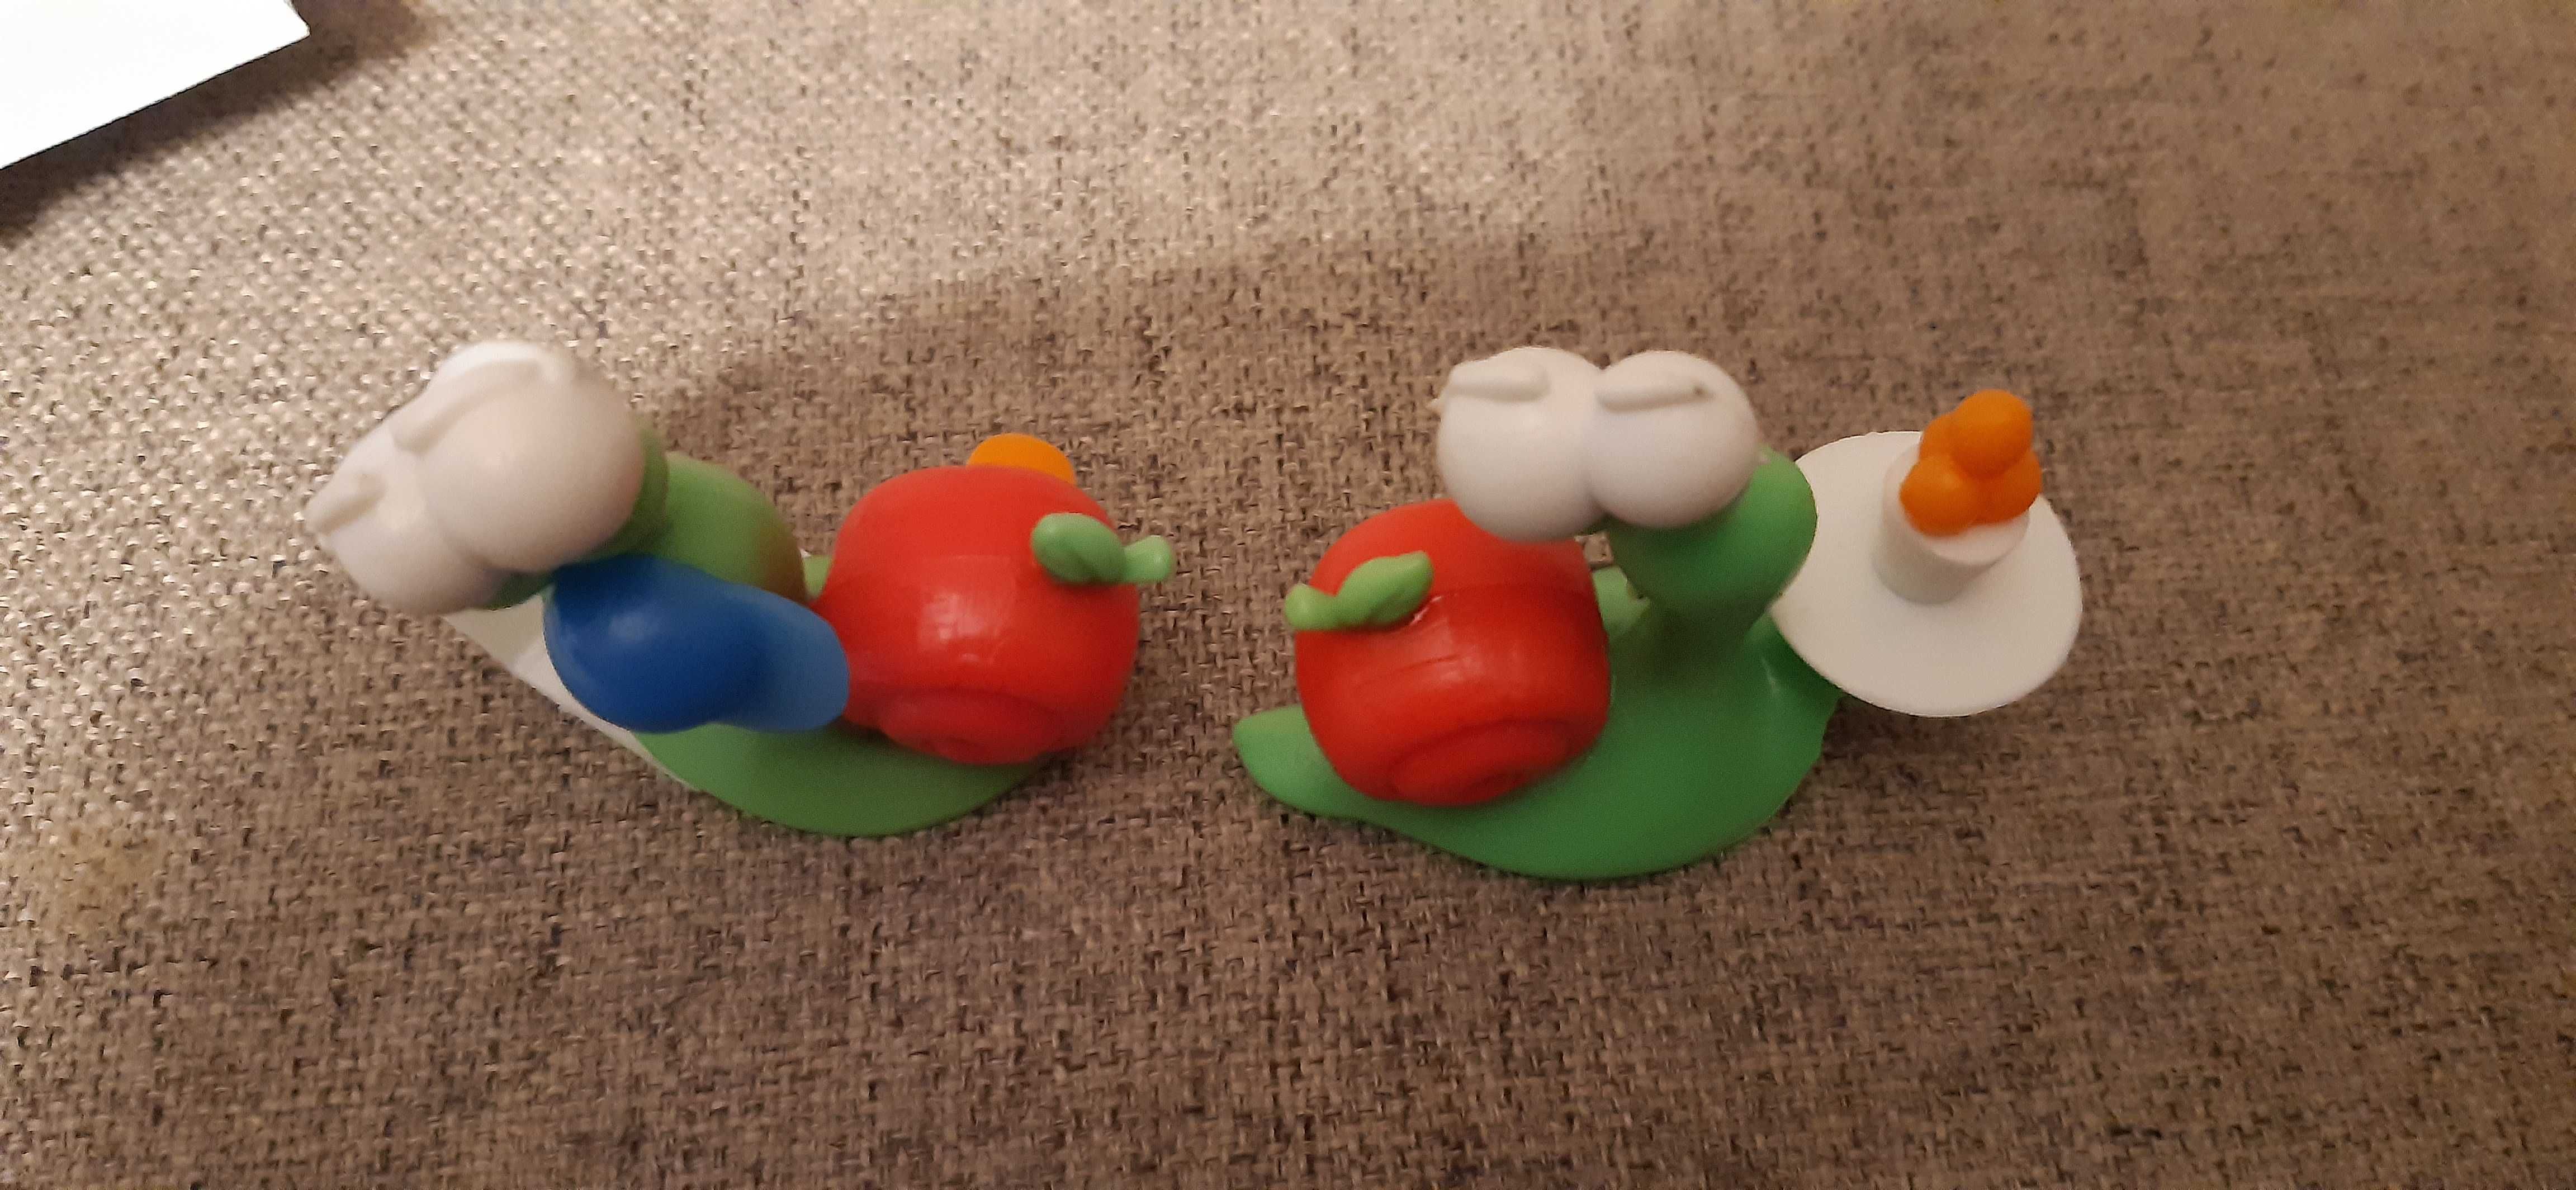 2 małe zabawki  figurki ślimaków,